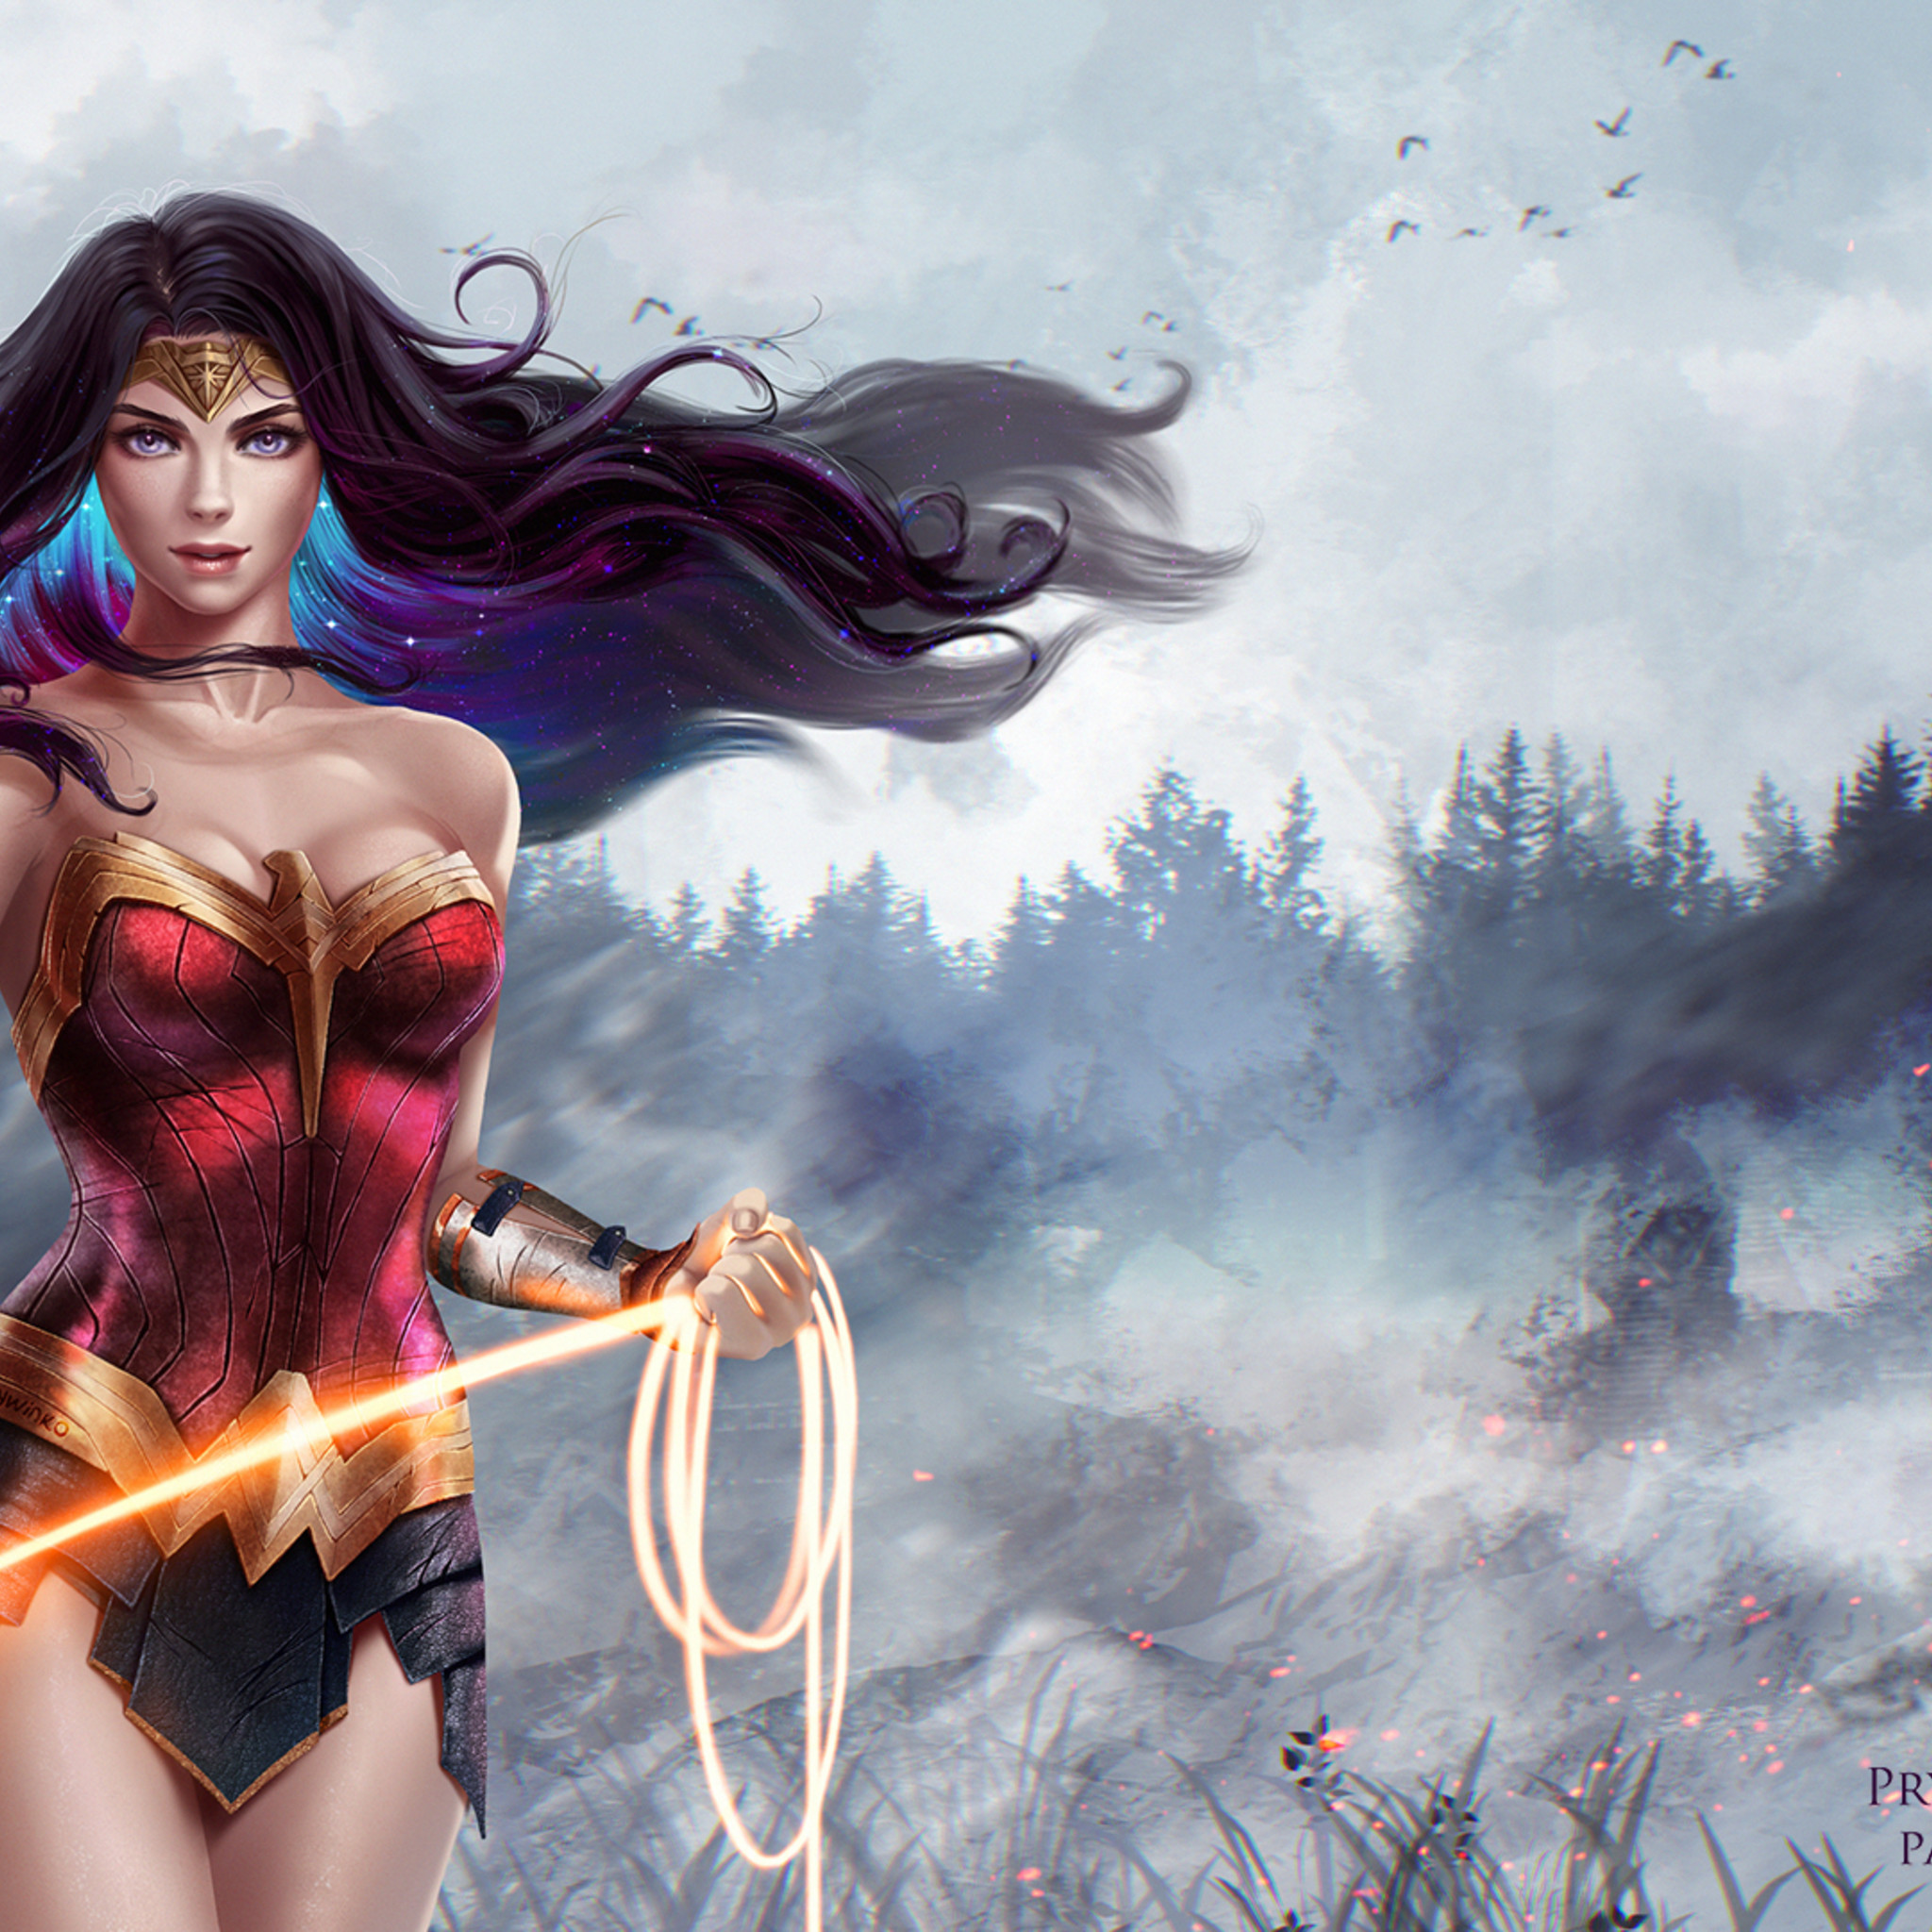 2048x2048 Wonder Woman Superhero Artwork (Ipad Air)